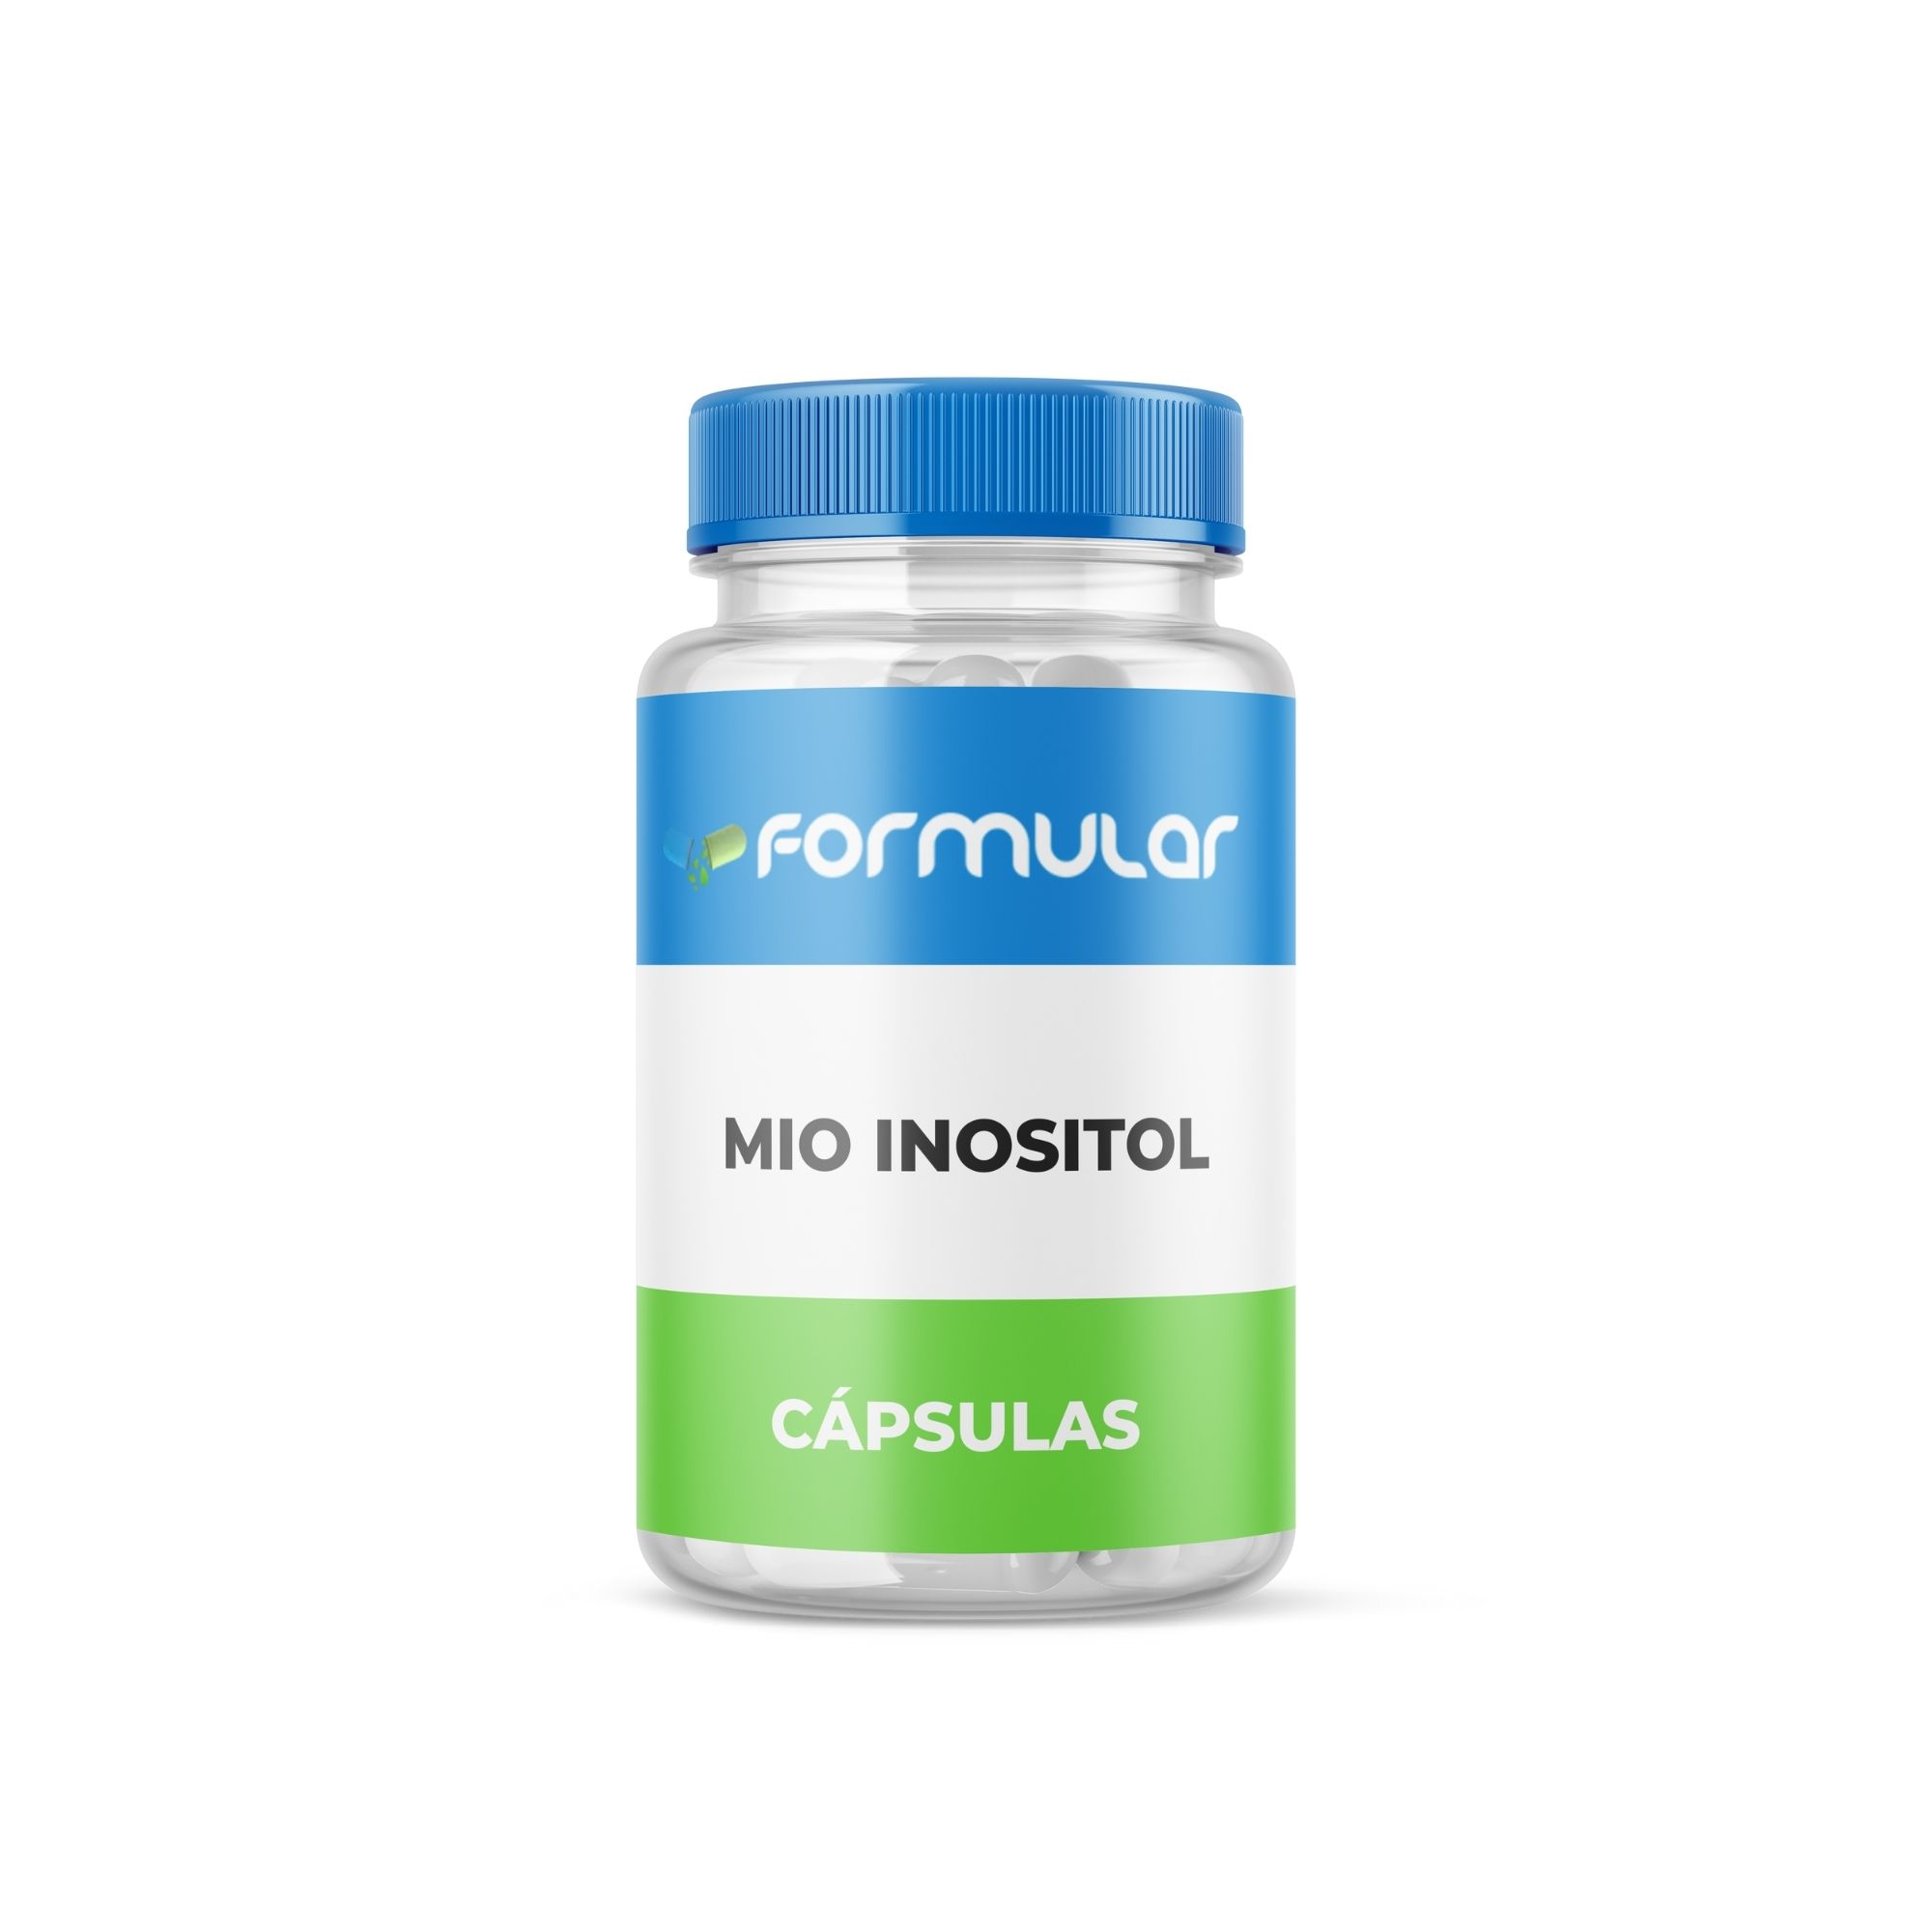 Inositol 1000Mg - Cápsulas - Mio Inositol - 100% Original